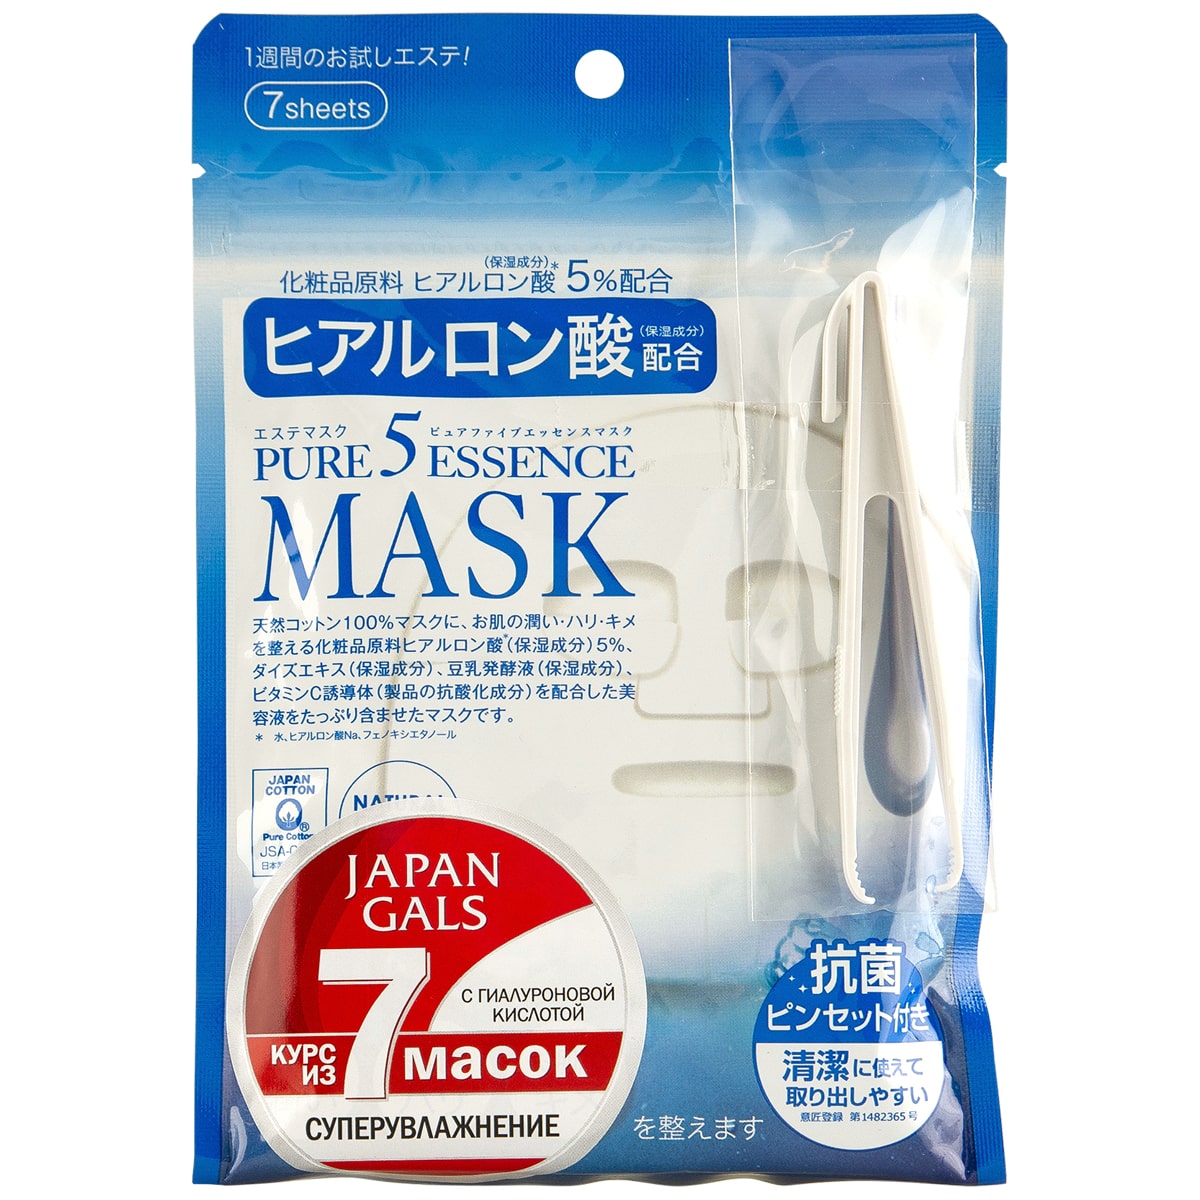 Japan Gals Маска с гиалуроновой кислотой Essential, 7 шт (Japan Gals, Pure5) маска с гиалуроновой кислотой japan gals pure5 essence 7 шт